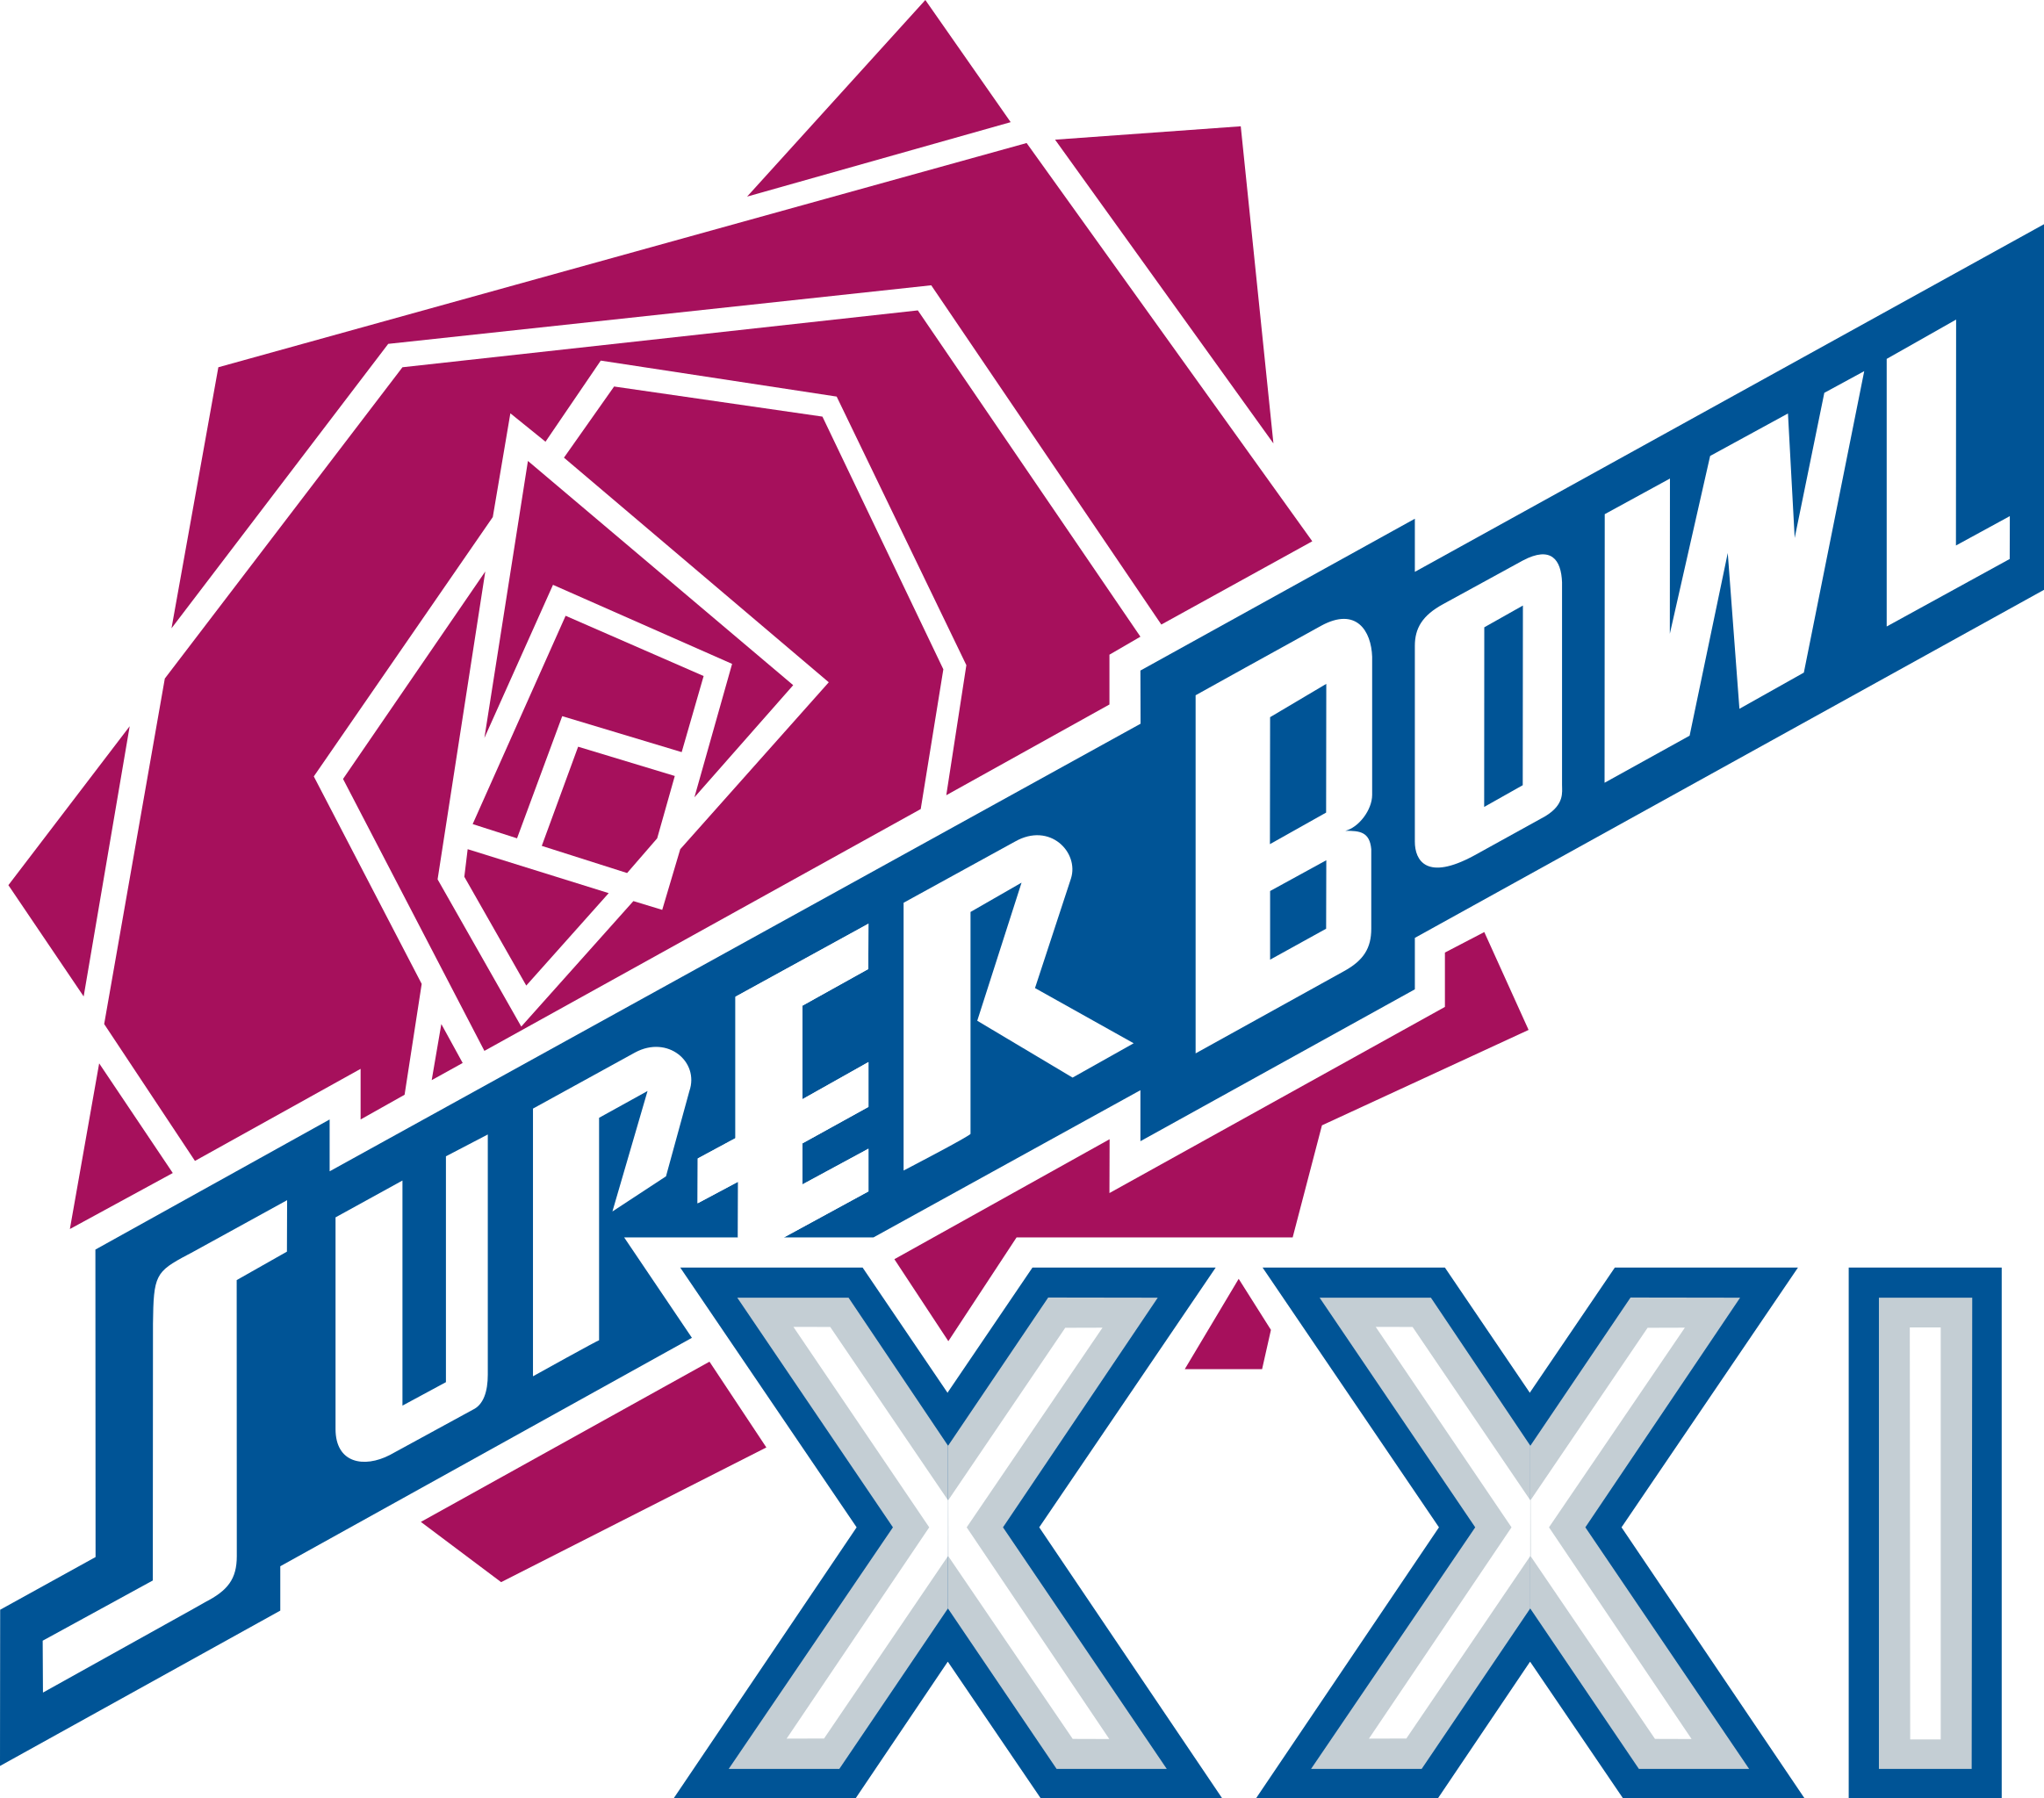 super bowl xxii